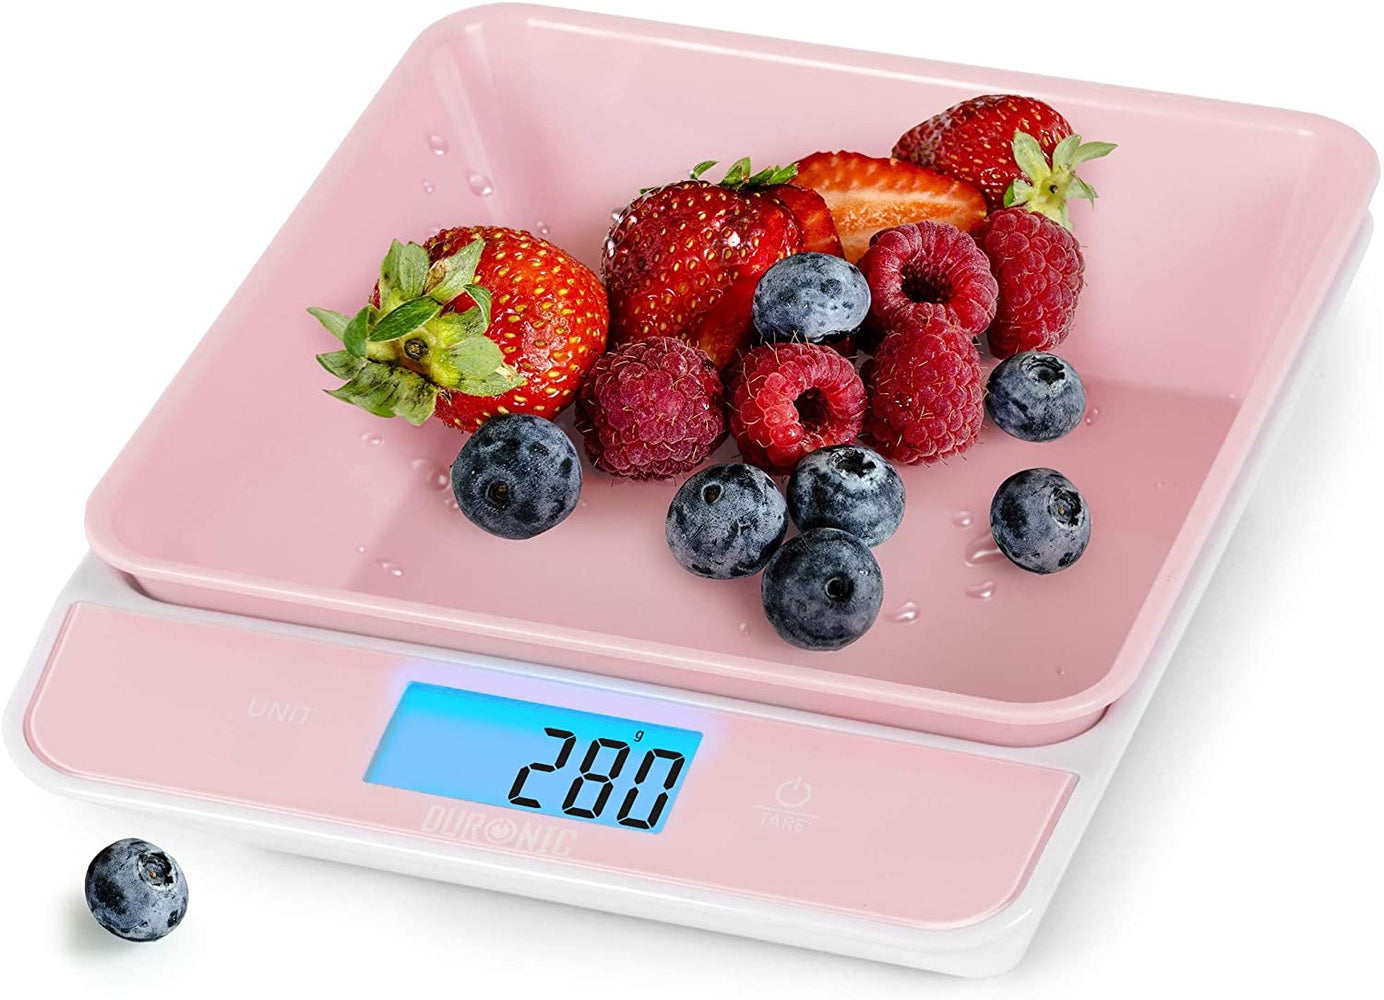 Duronic KS100 PK Báscula de cocina digital 22x18.3cm | Pantalla LCD grande con iluminación en azul | Peso máximo 5 kg | Bol de 1.2 L | Función tara | Mide en gr, lb, oz y ml - Color rosa